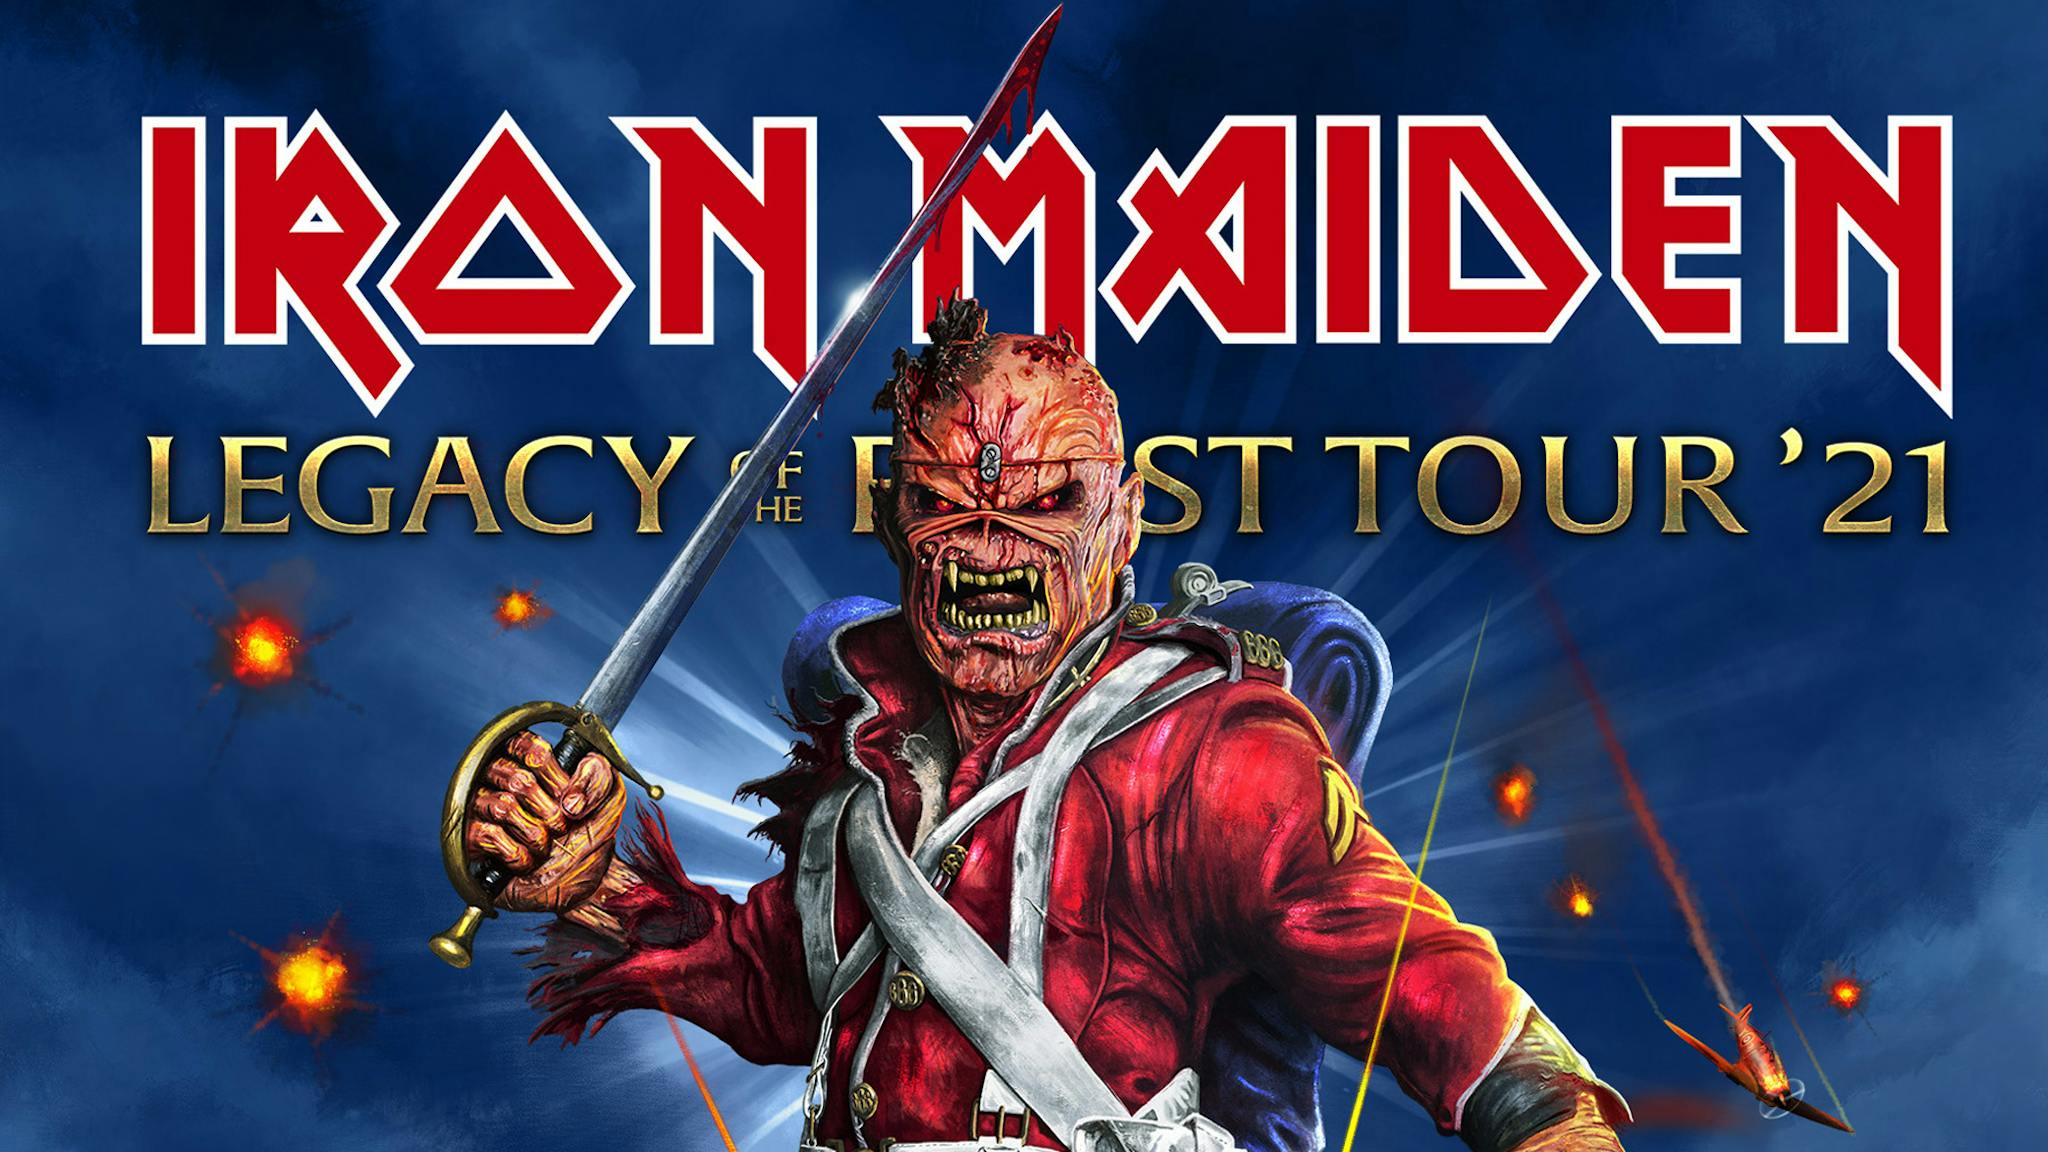 new iron maiden tour